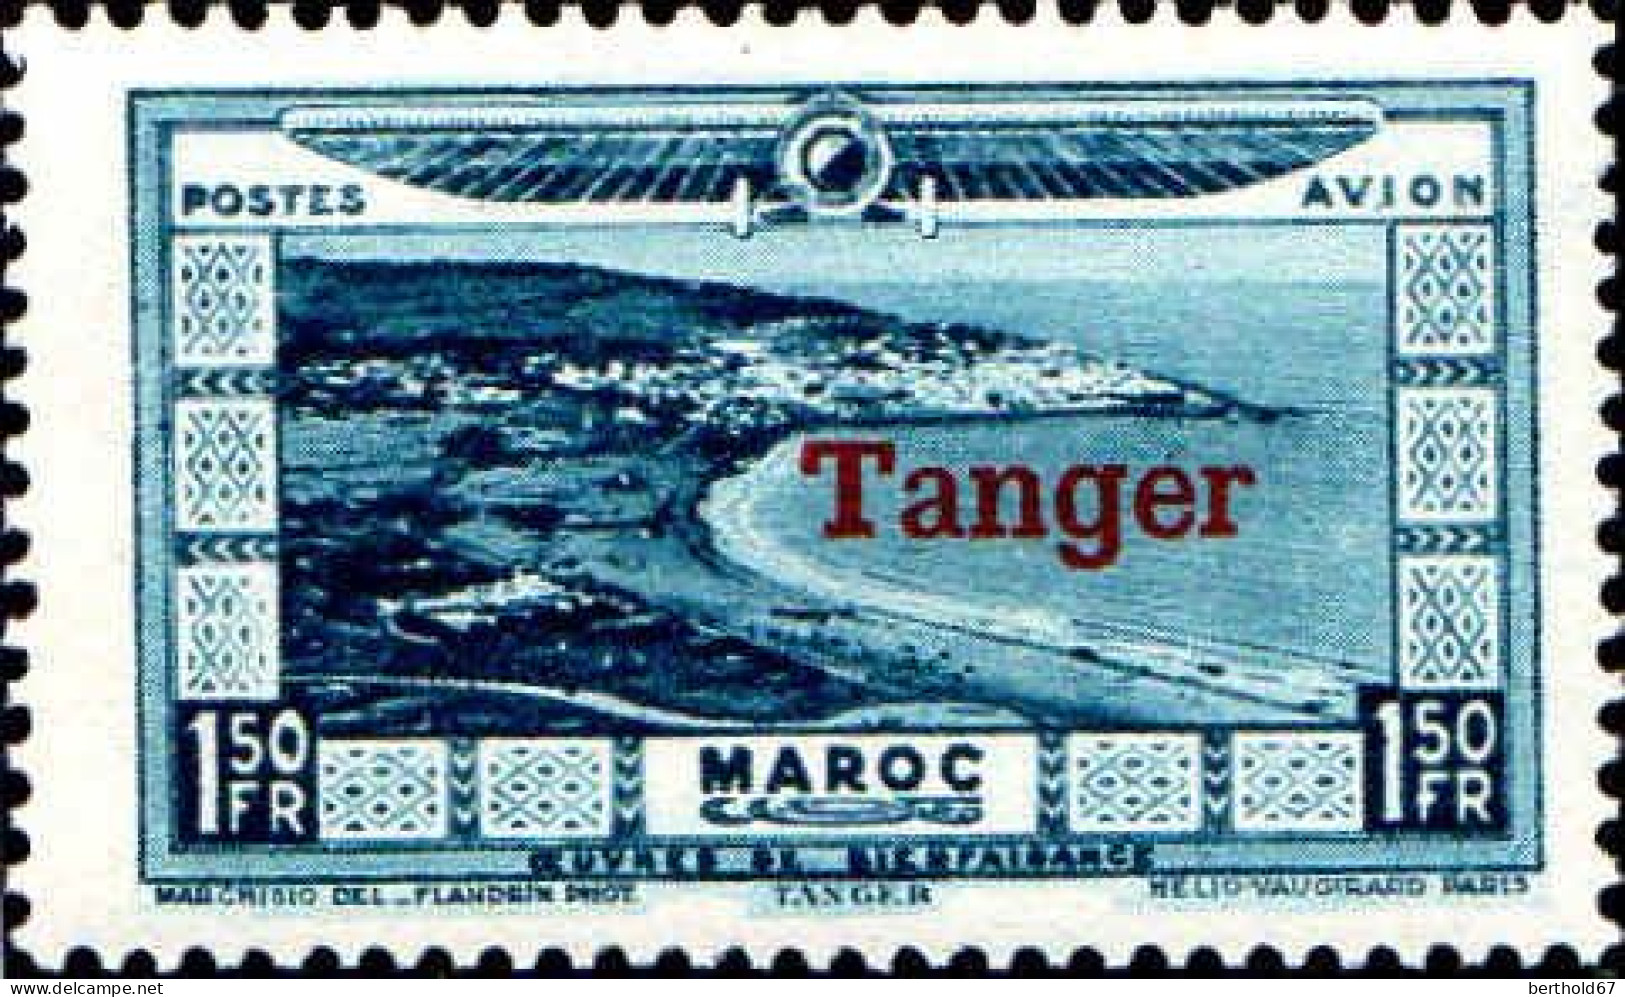 Maroc (Prot.Fr) Avion N* Yv: 22/31 Victimes de la sécheresse & des inondations surch Tanger (Trace de charnière)